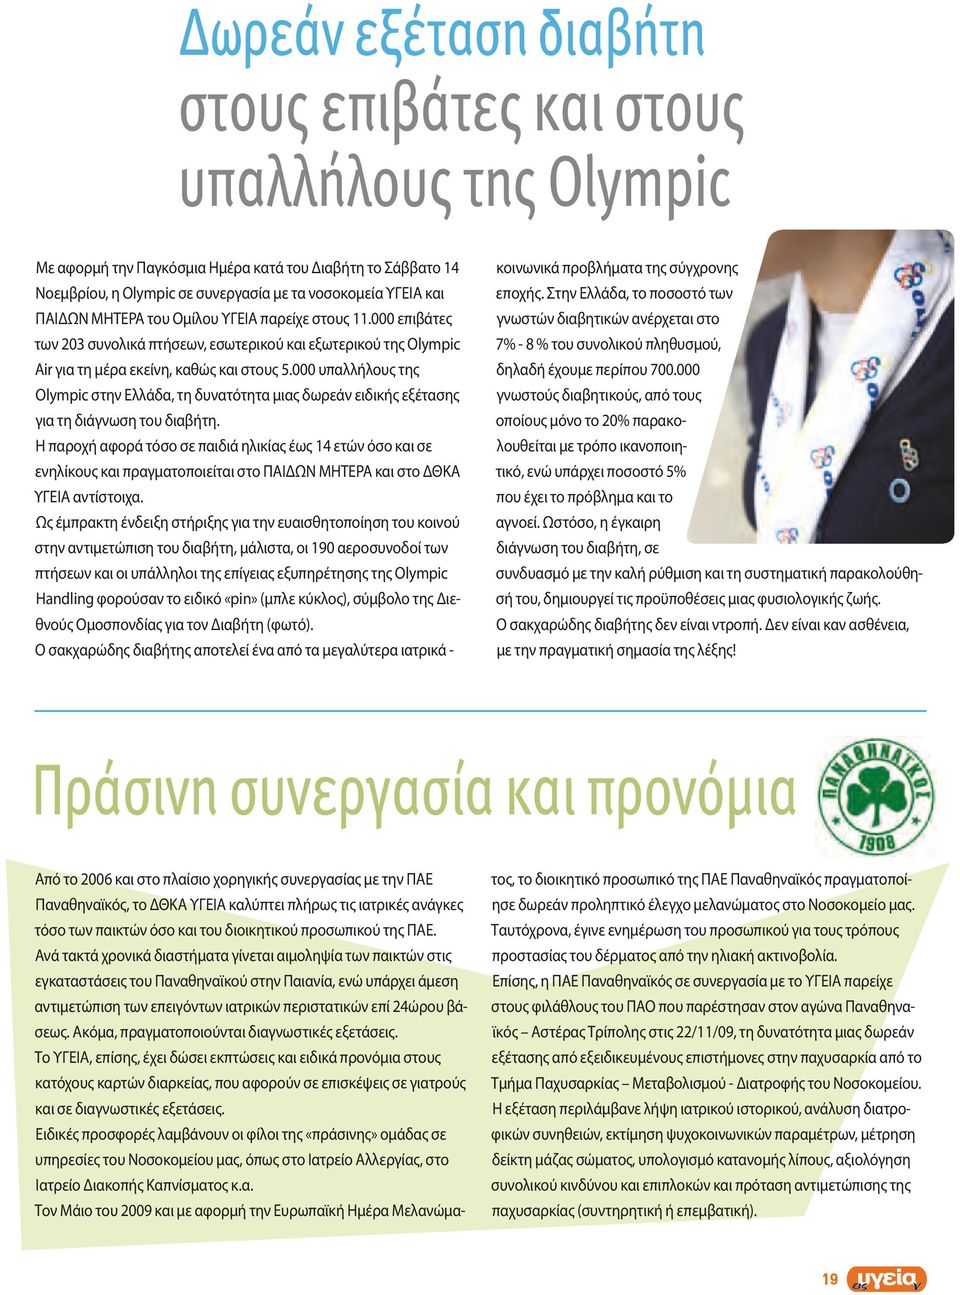 000 υπαλλήλους της Olympic στην Ελλάδα, τη δυνατότητα μιας δωρεάν ειδικής εξέτασης για τη διάγνωση του διαβήτη.